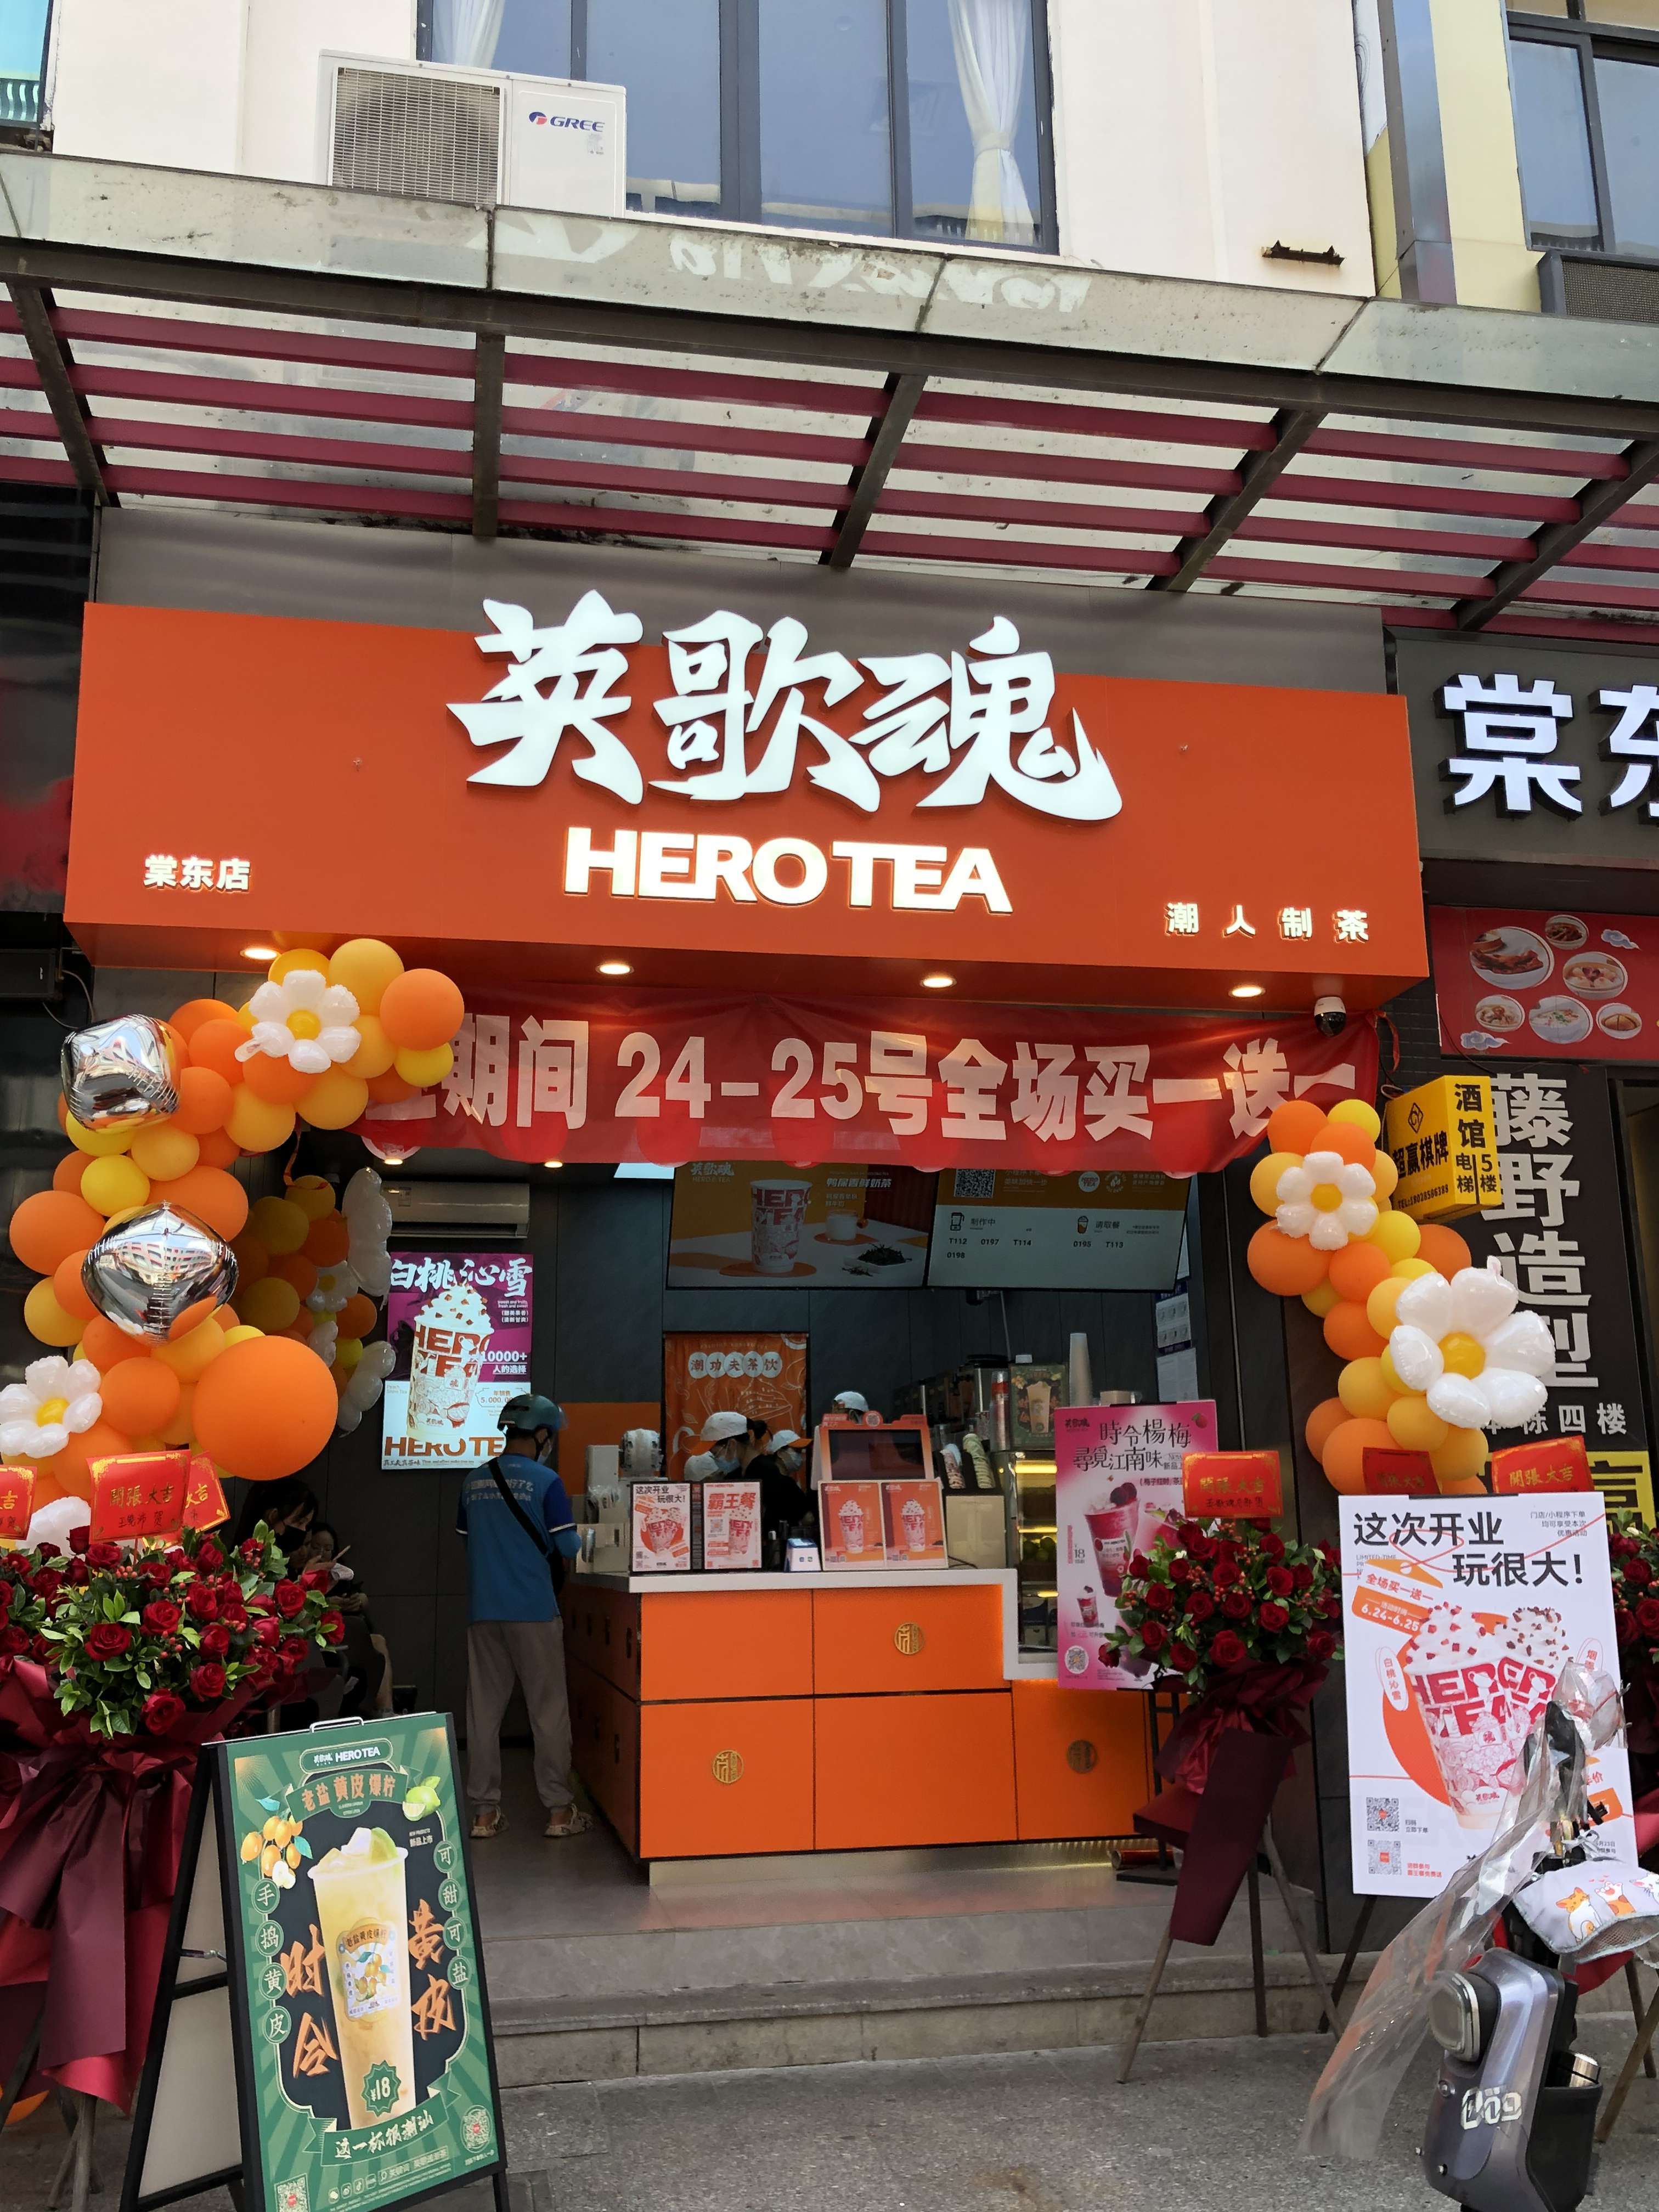 这是吴先生加盟的第二家英歌魂奶茶店,选址广州繁华地带,开业当天生意